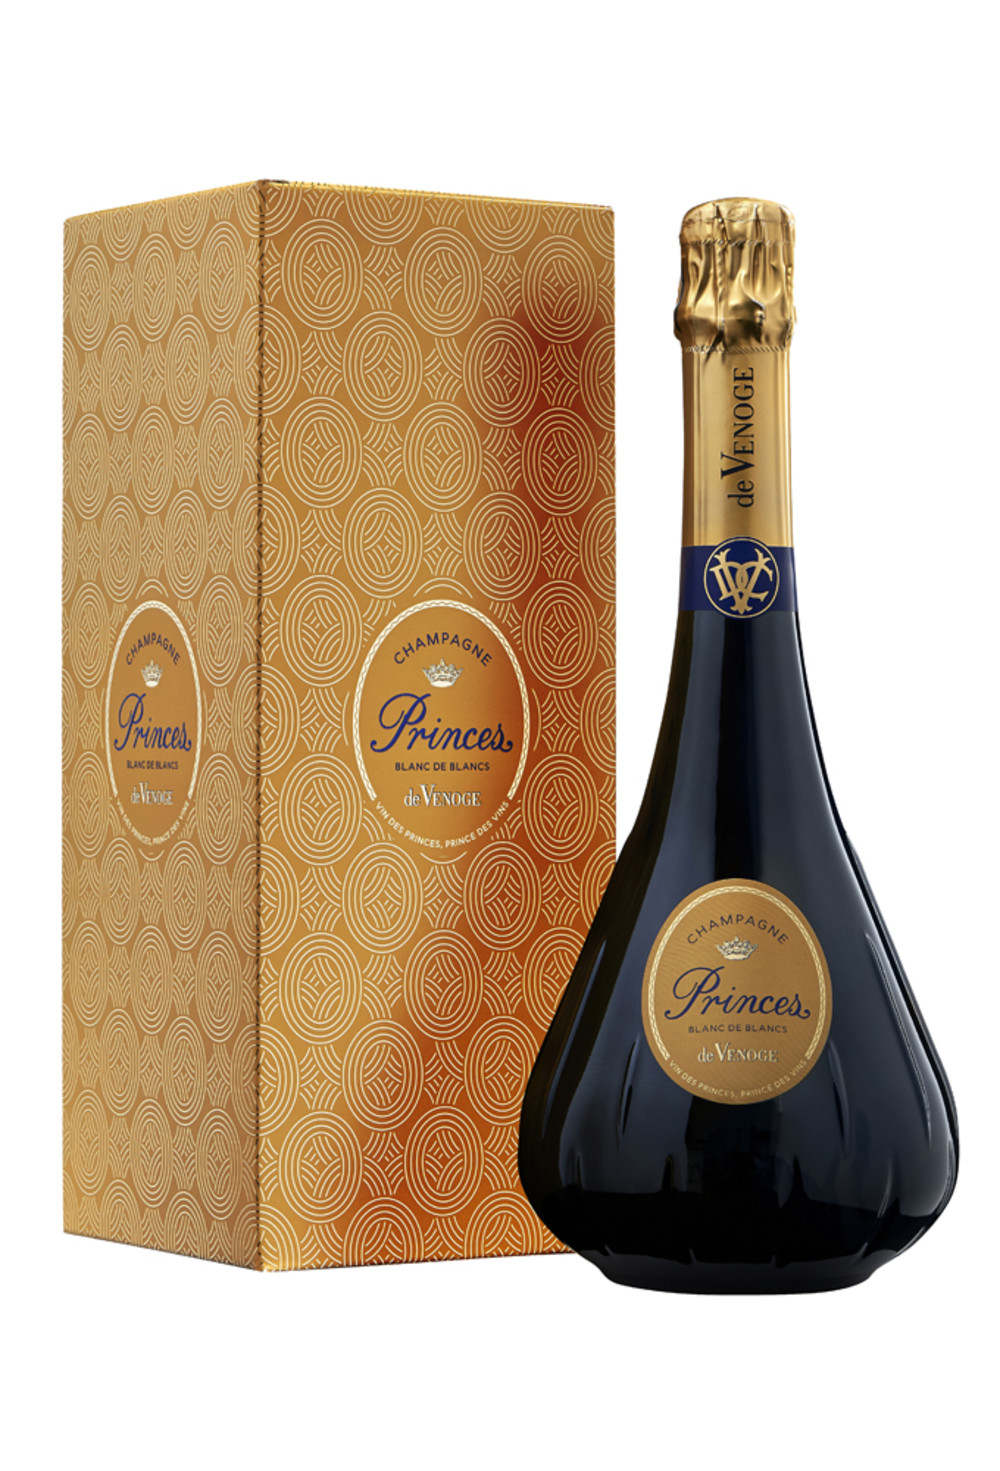 Champagne DeVENOGE_PRINCES_BLANC DE BLANCS et etui_Packshot.jpg